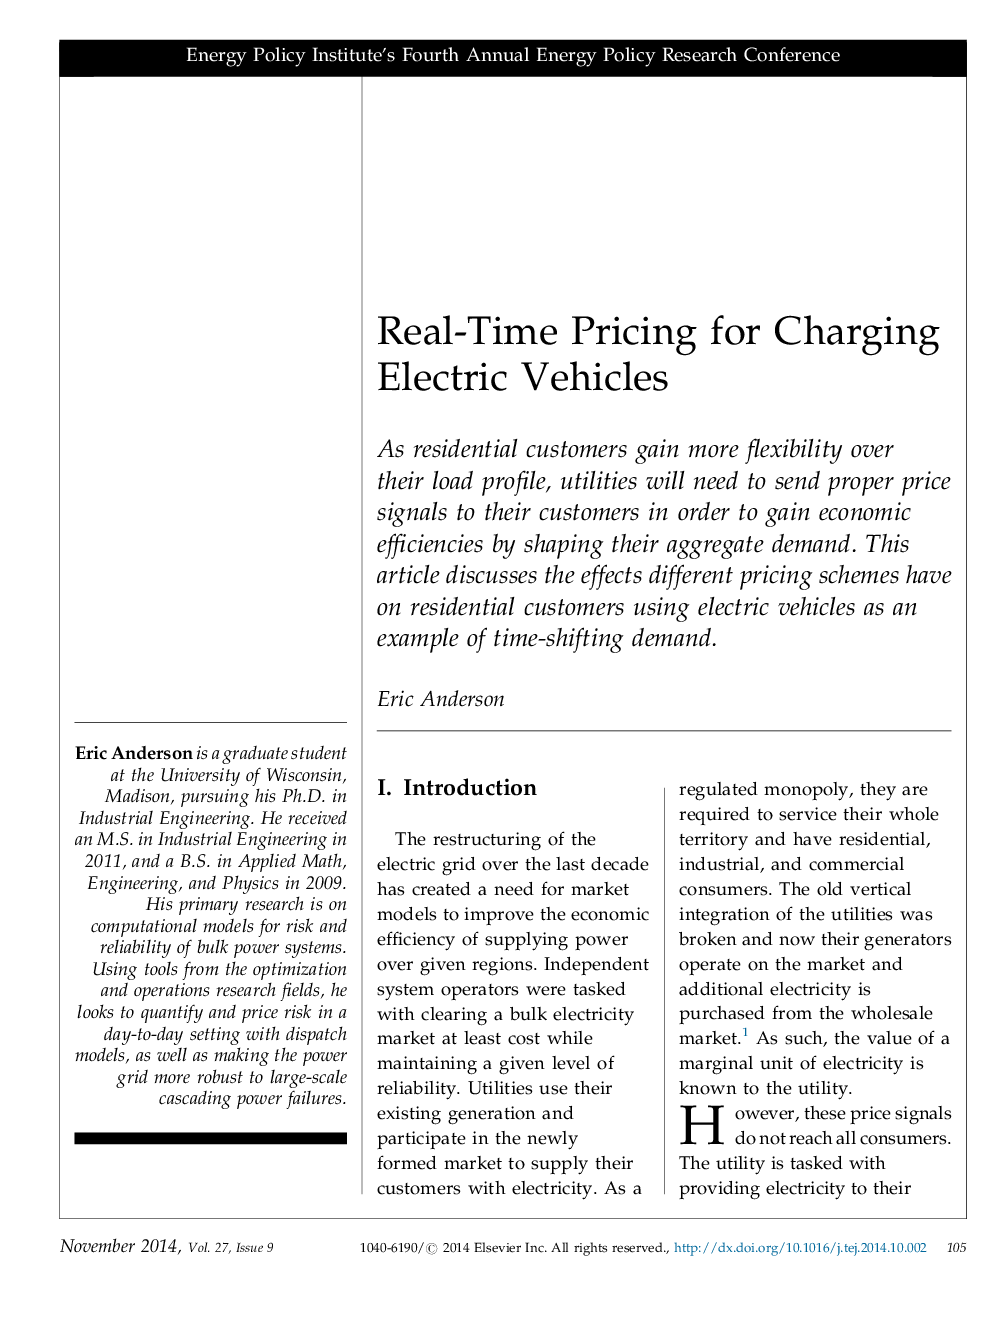 قیمت گذاری در زمان واقعی برای وسایل نقلیه الکتریکی شارژ 